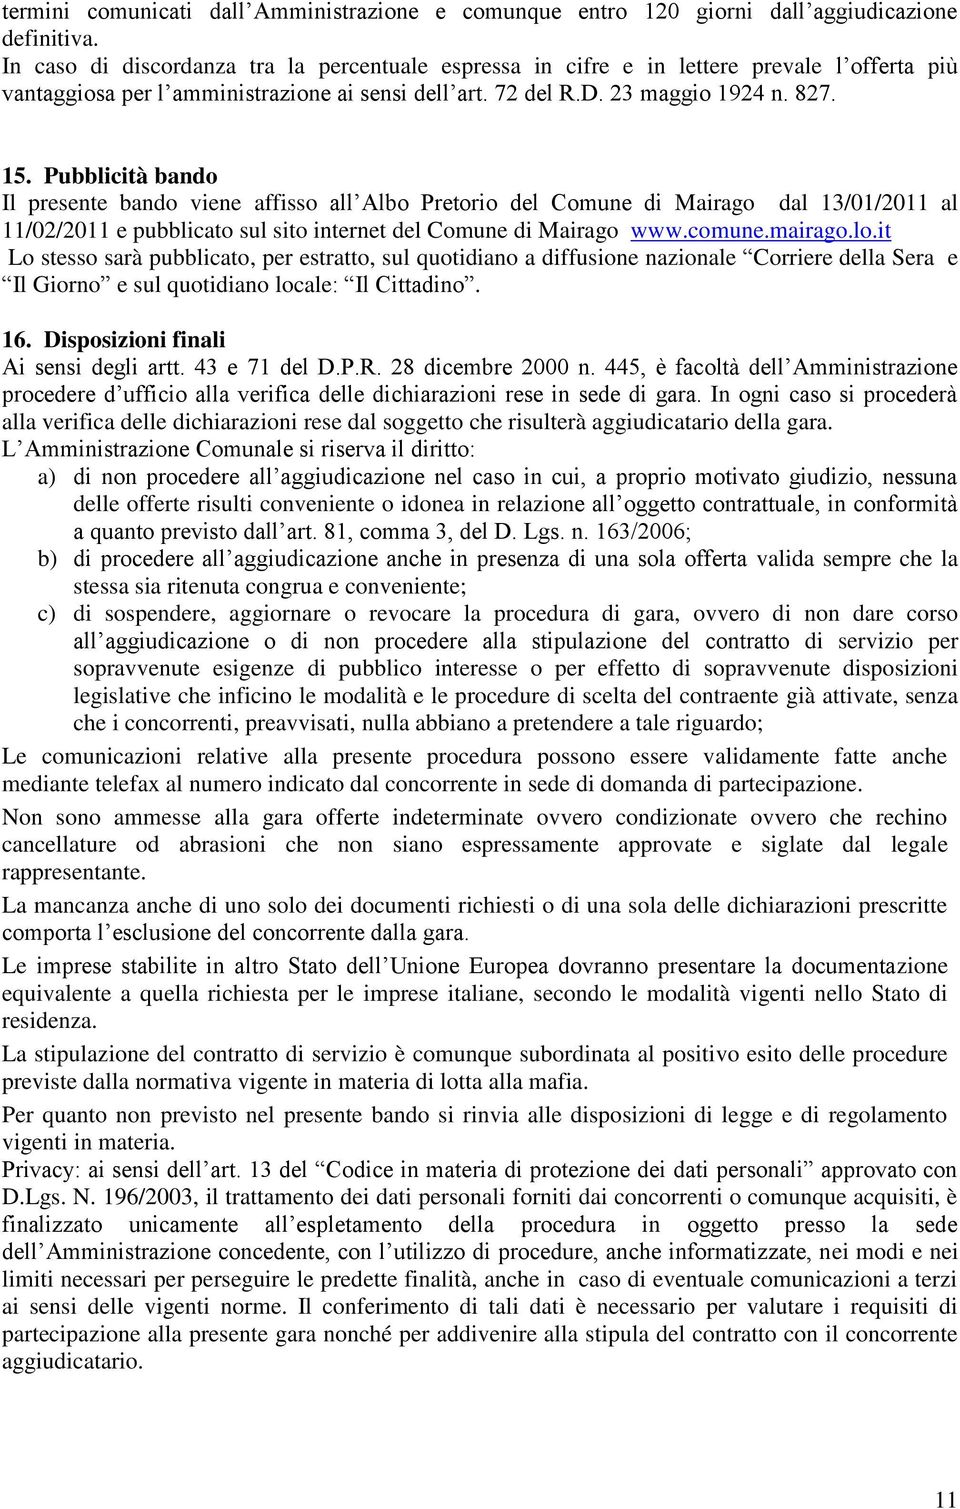 Pubblicità bando Il presente bando viene affisso all Albo Pretorio del Comune di Mairago dal 13/01/2011 al 11/02/2011 e pubblicato sul sito internet del Comune di Mairago www.comune.mairago.lo.